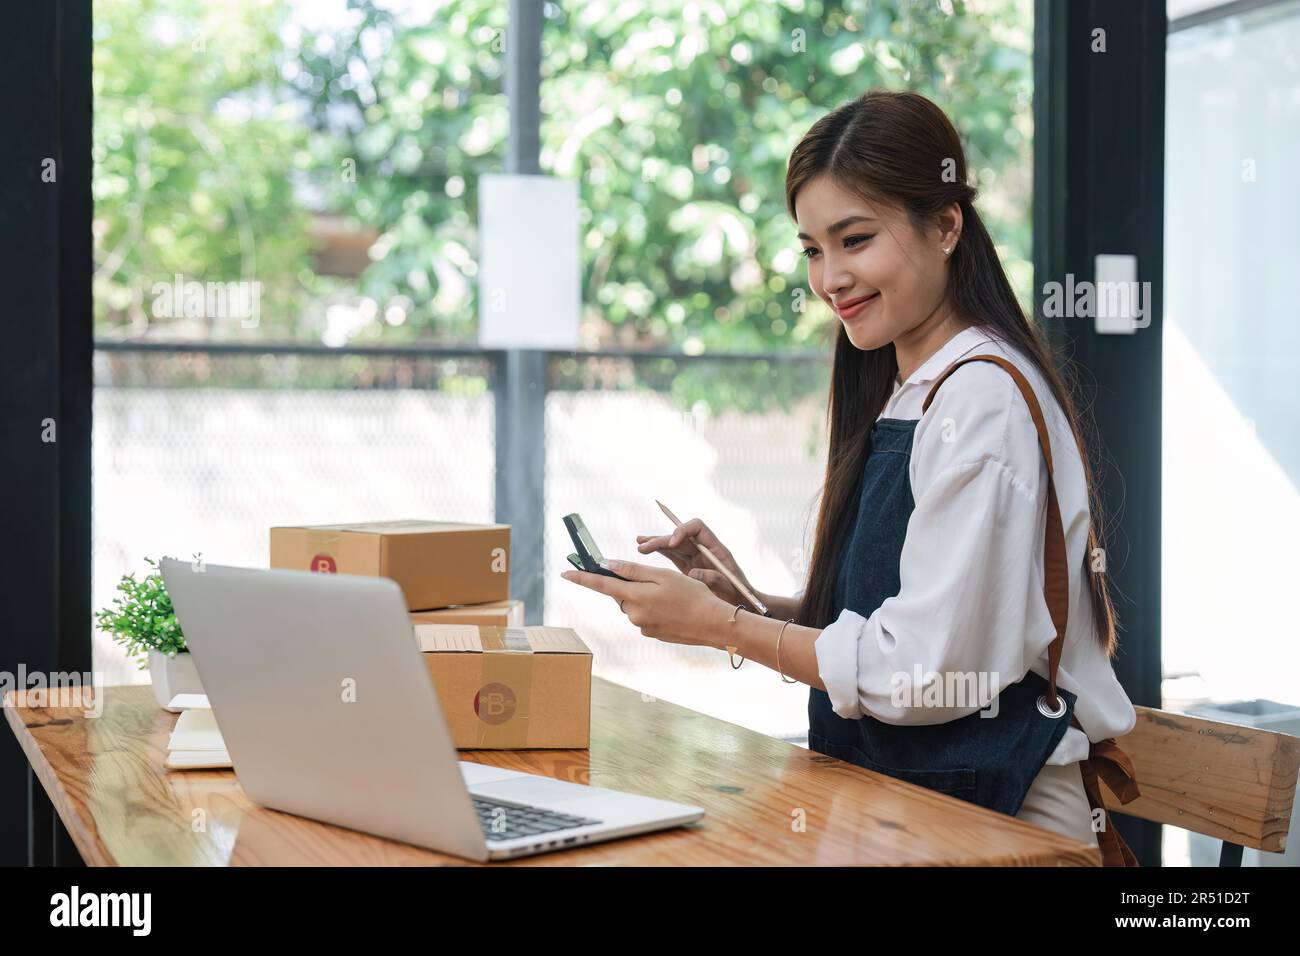 Startup-Unternehmen erfolgreicher Inhaber eines kleinen Unternehmens die junge asiatische Frau sitzt mit Laptop, Taschenrechner und Karton zu Hause und bereitet den Versand an den Kunden, das Verkäufergeschäft vor Stockfoto